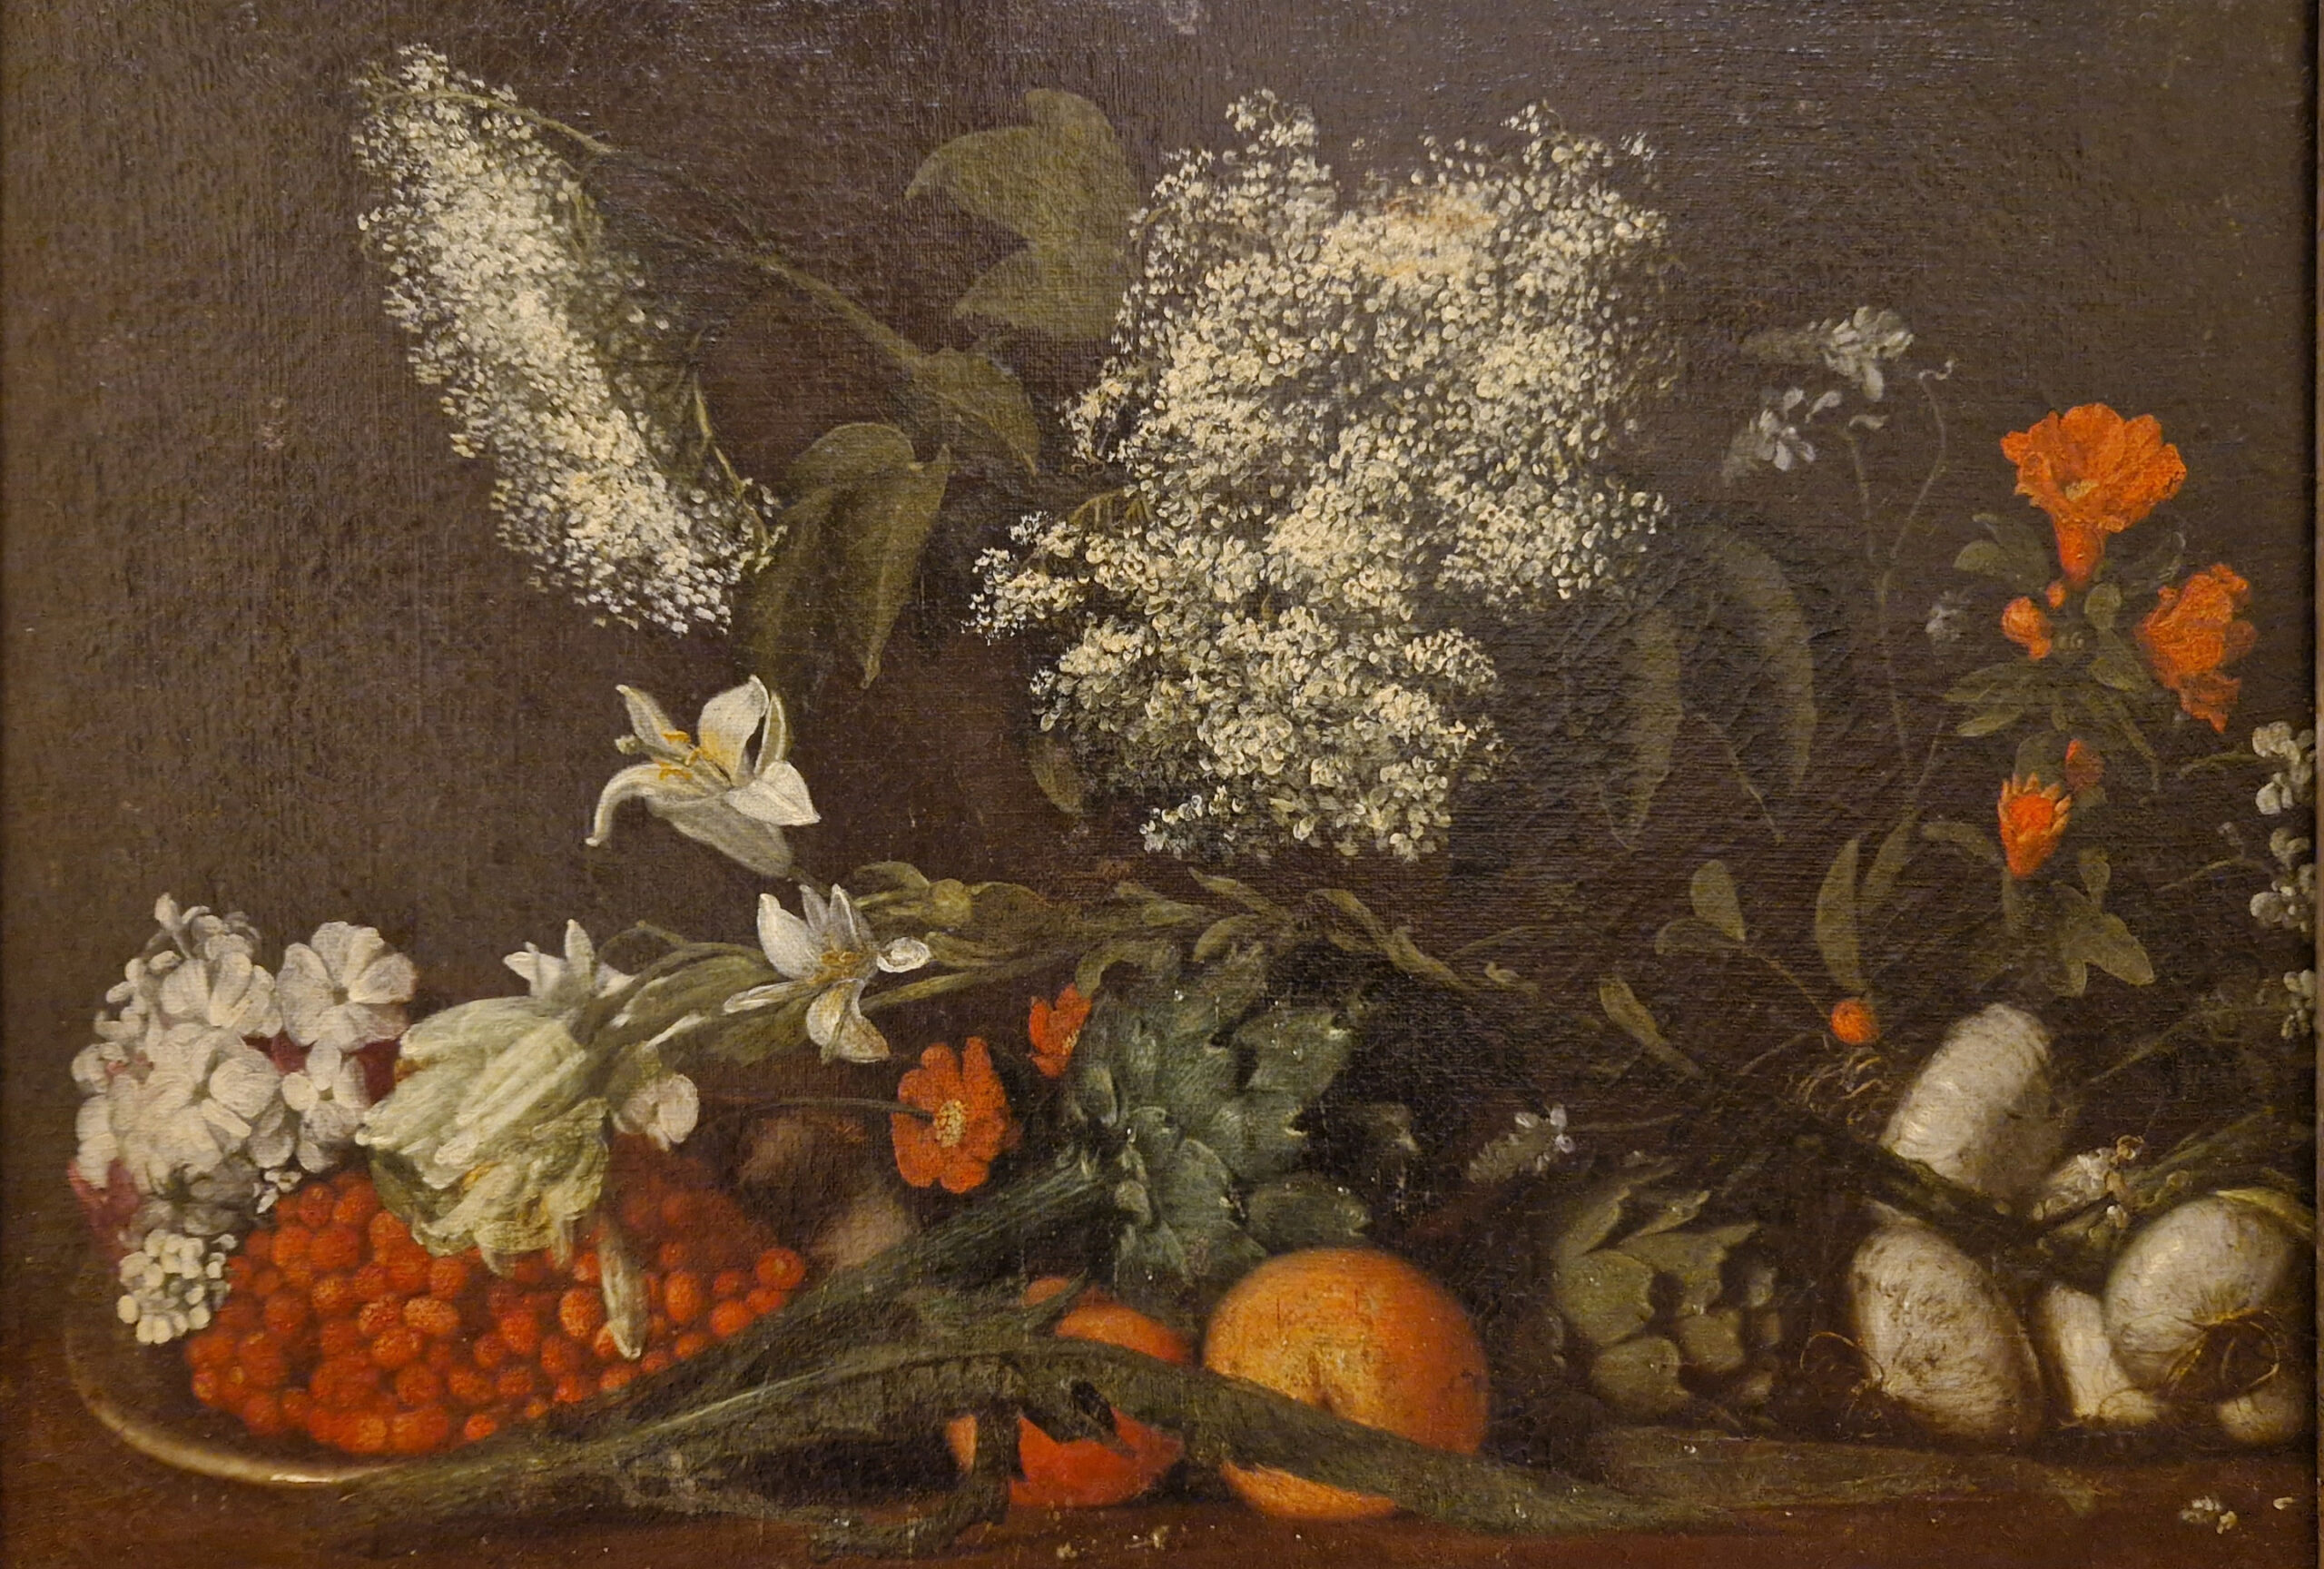 Vlierbloesem, Anonieme Toscaanse schilder, 17de eeuw, Museo della Natura Morta, Poggio a Caiano